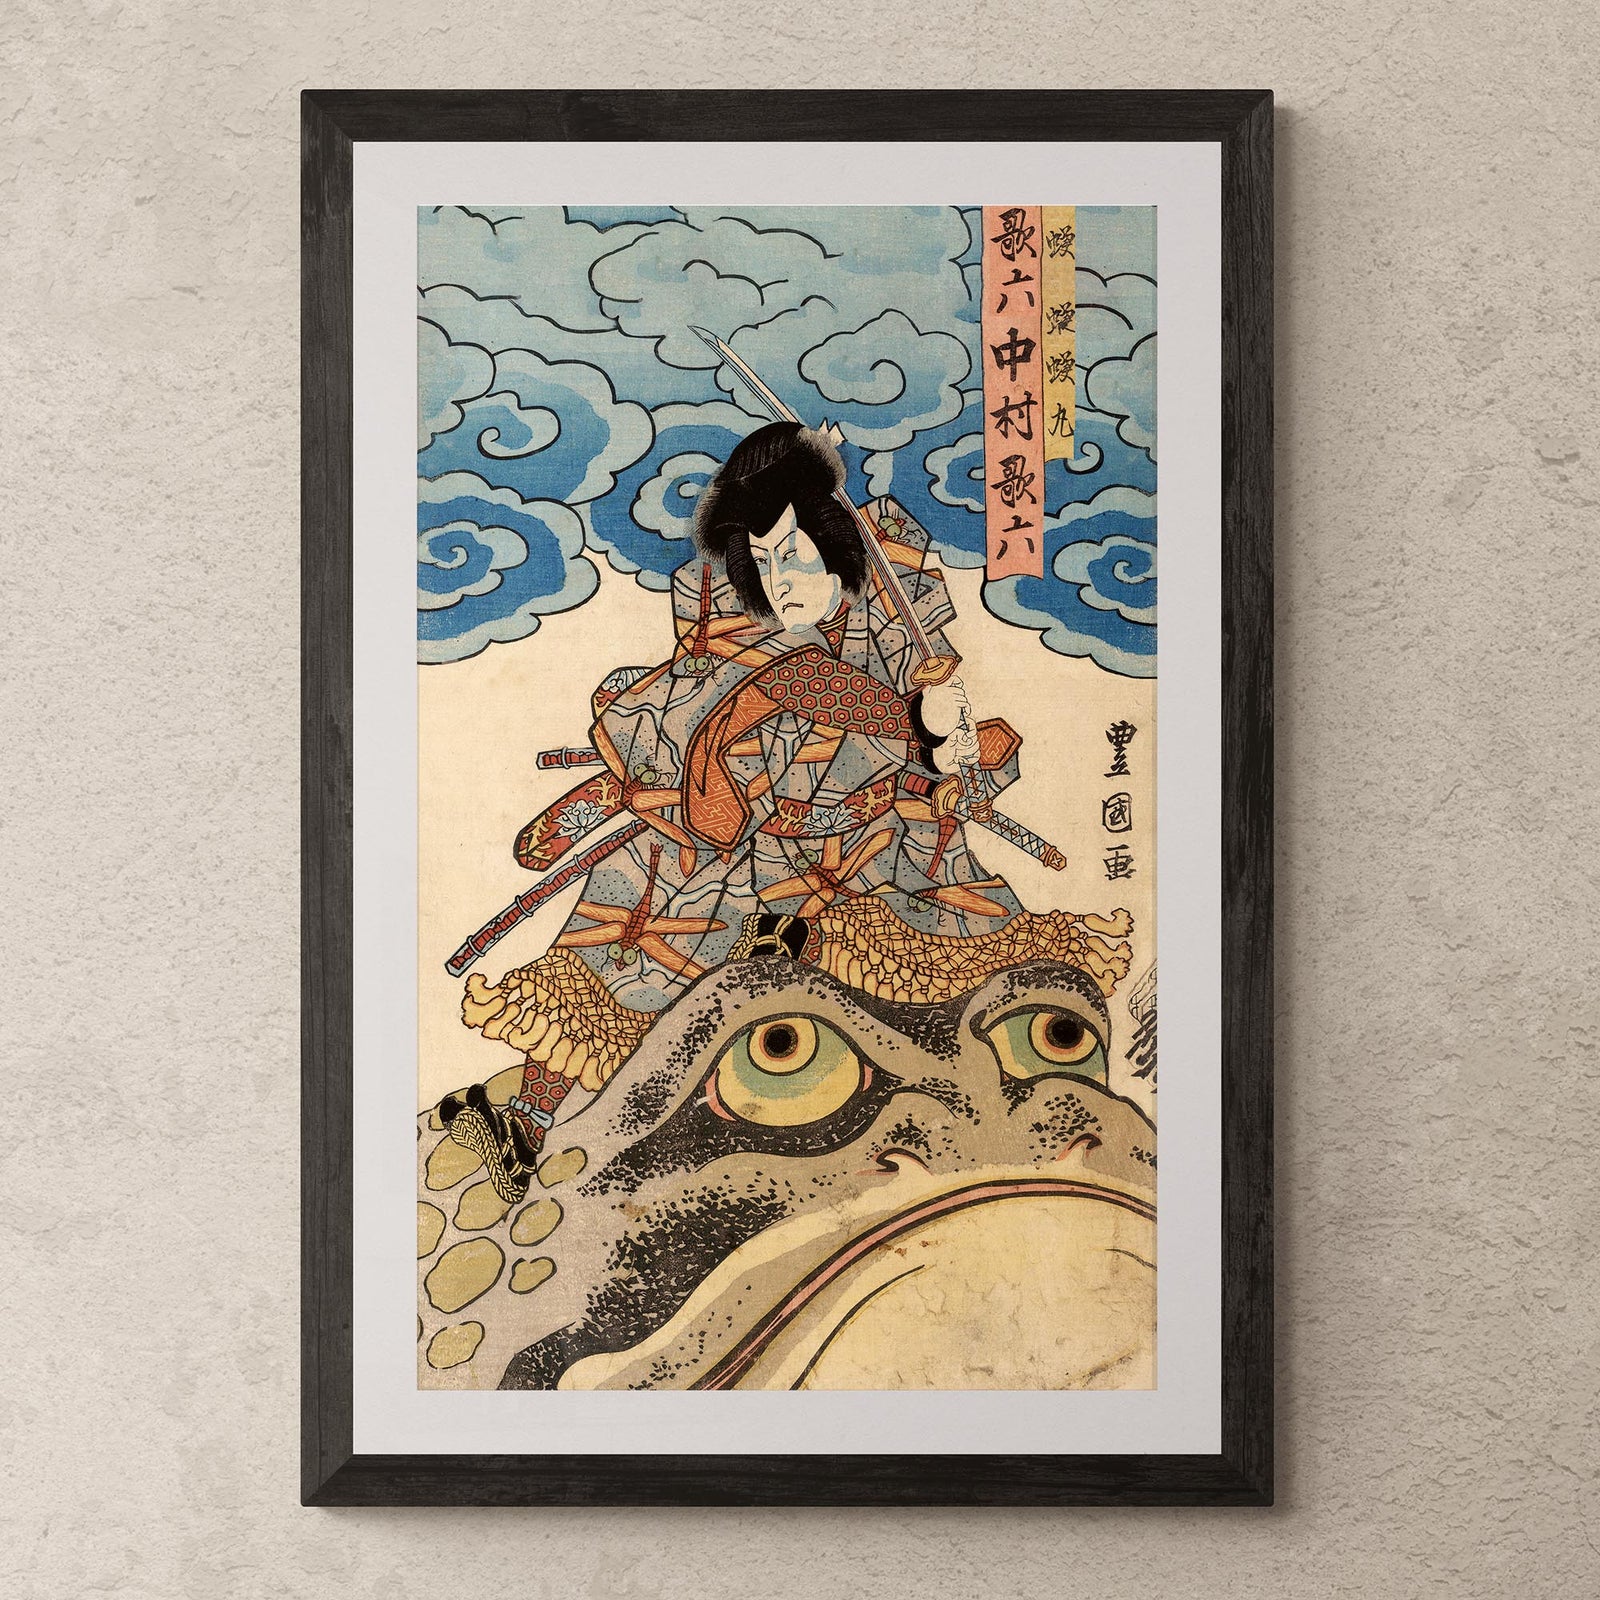 Fine art 4"x6" Jiraiya, The Samurai Warrior, Battles the Sorcerer Orochimaru | Utawgawa Kuniyoshi Toad Art, Fine Art Print